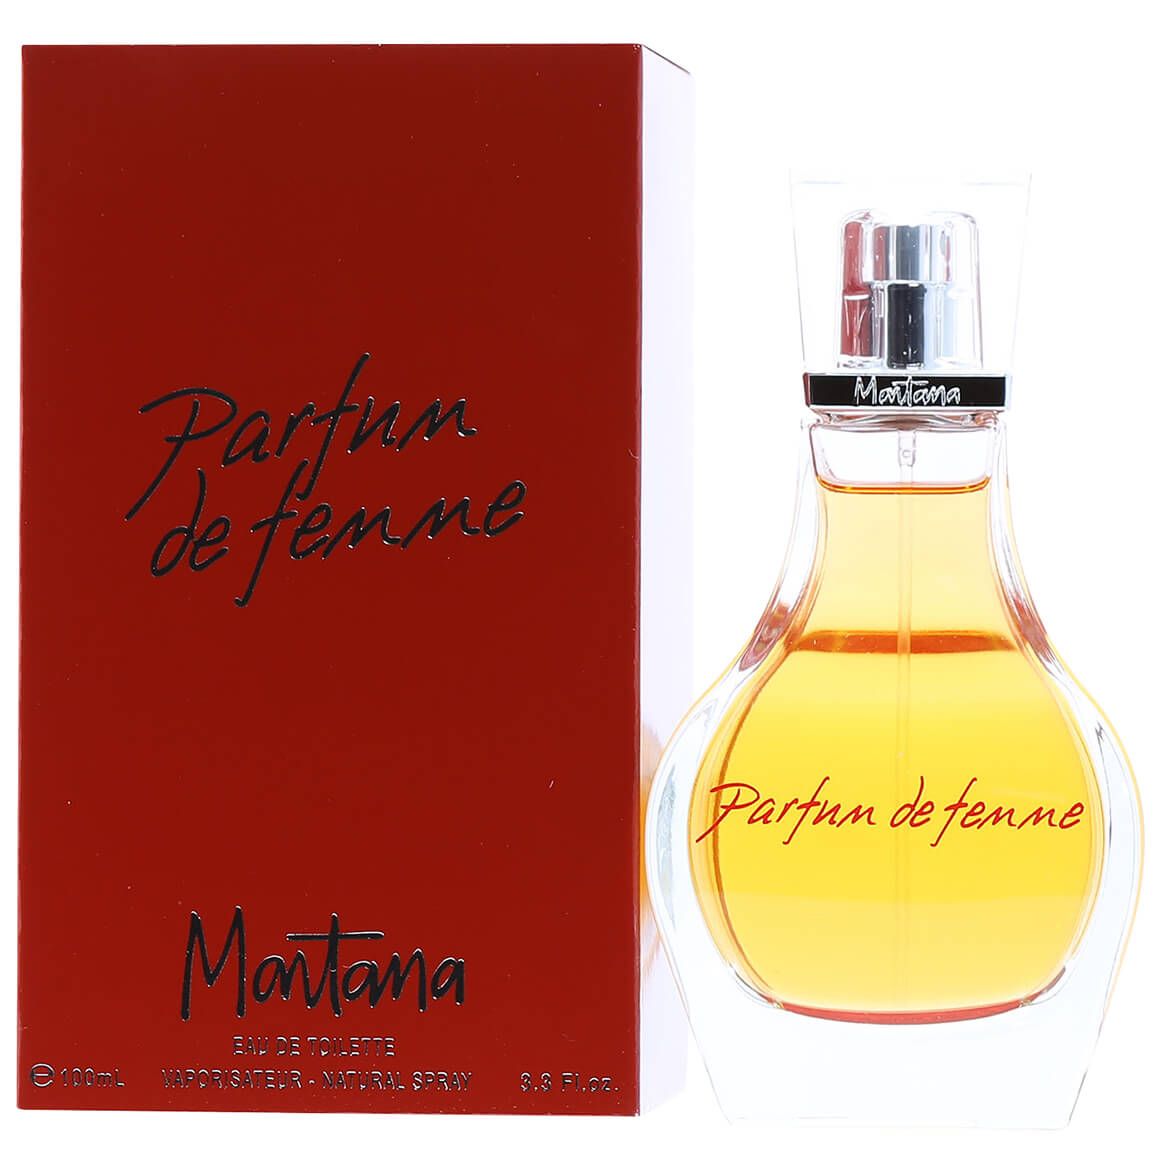 Montana Parfum De Femme by Montana for Women EDT, 3.4 fl. oz. + '-' + 377276